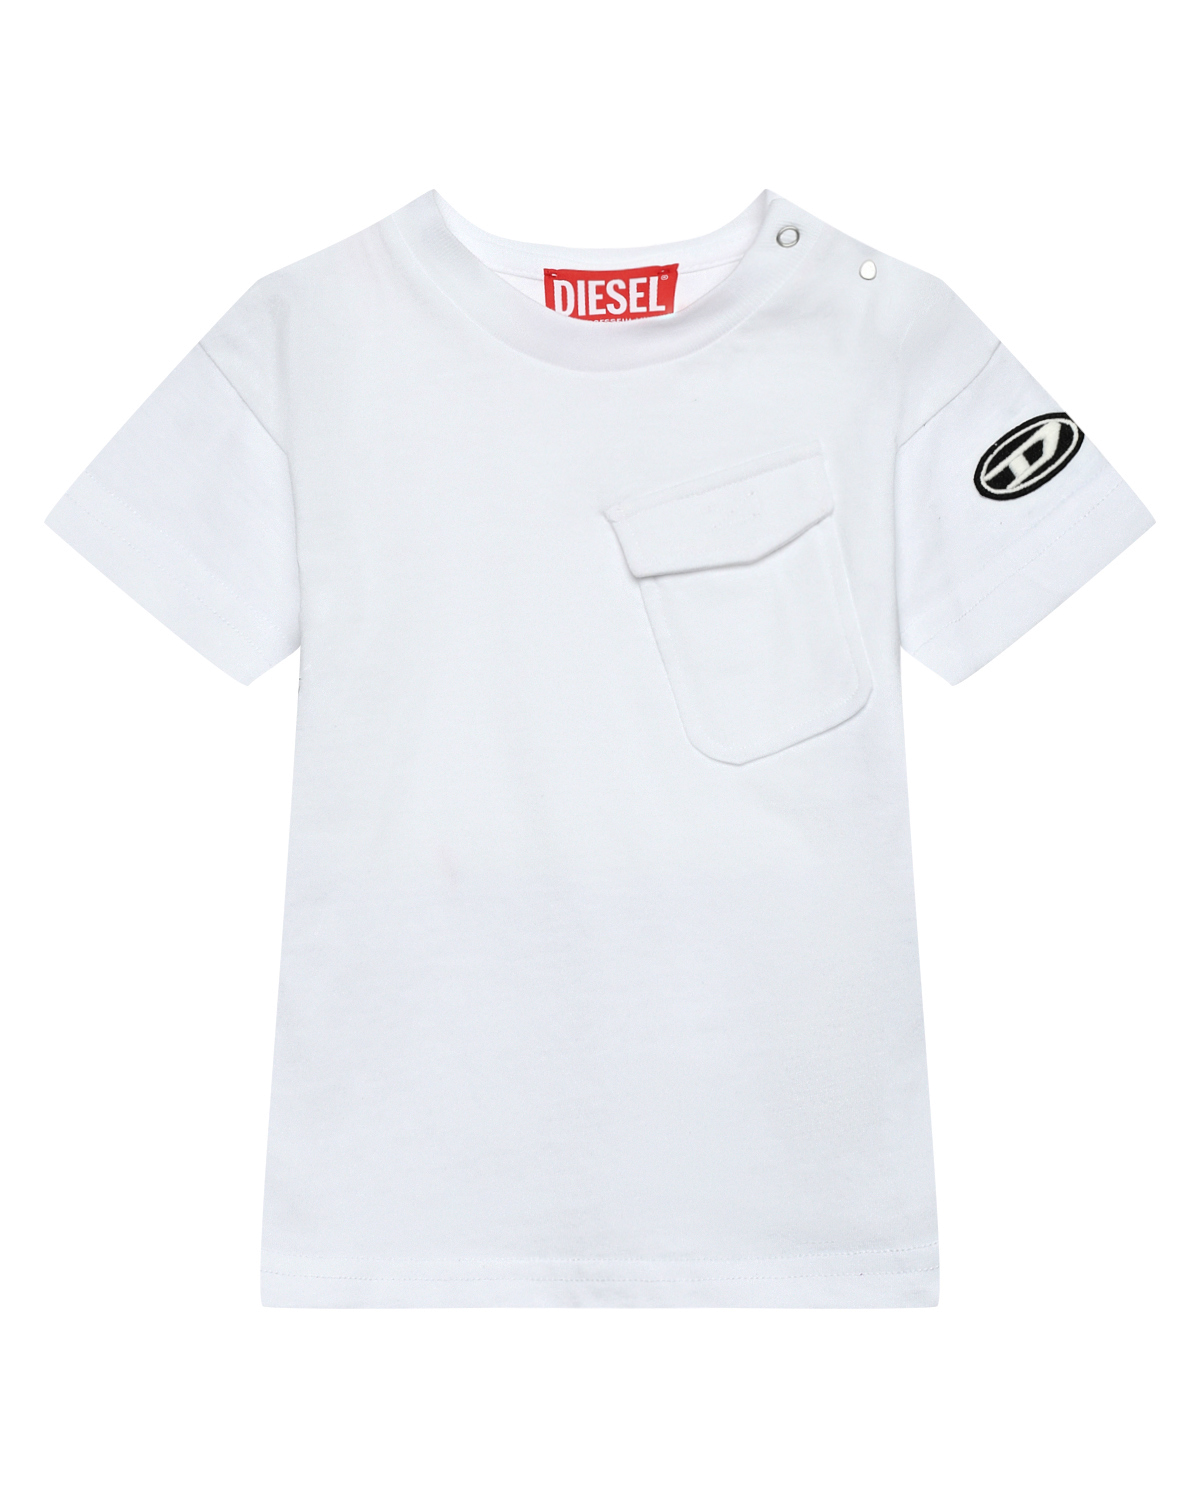 Футболка белая, кривой карман и черное лого на рукаве Diesel футболка со сплошным разноцветным лого dolce